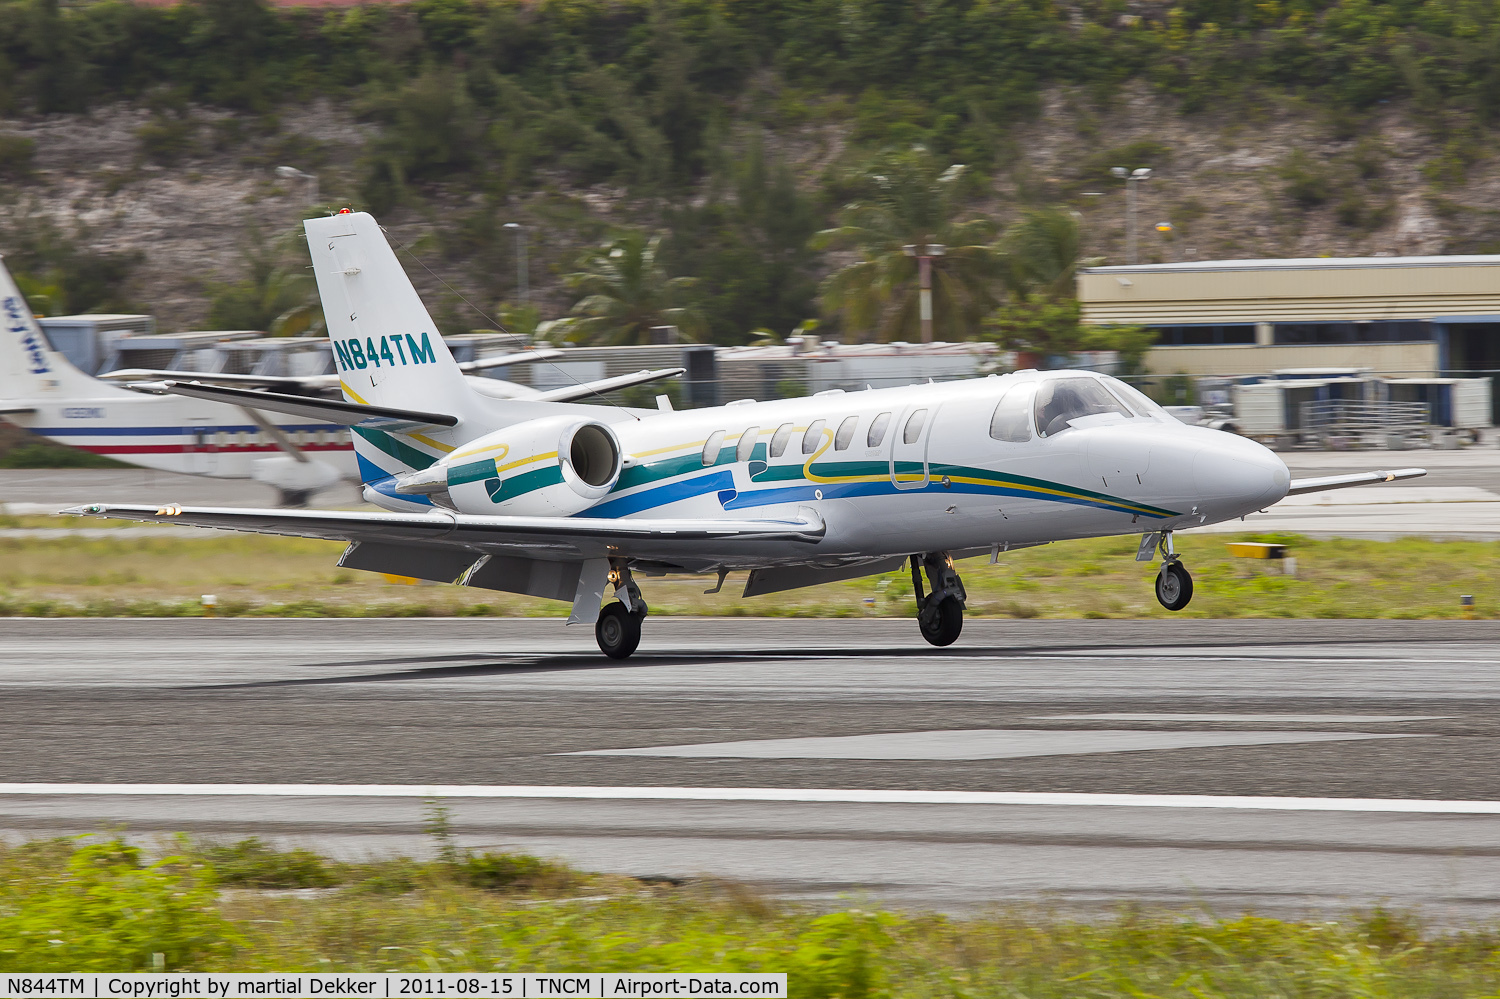 N844TM, 2004 Cessna Cittation Encore 560 C/N 560-0660, landing to sxm